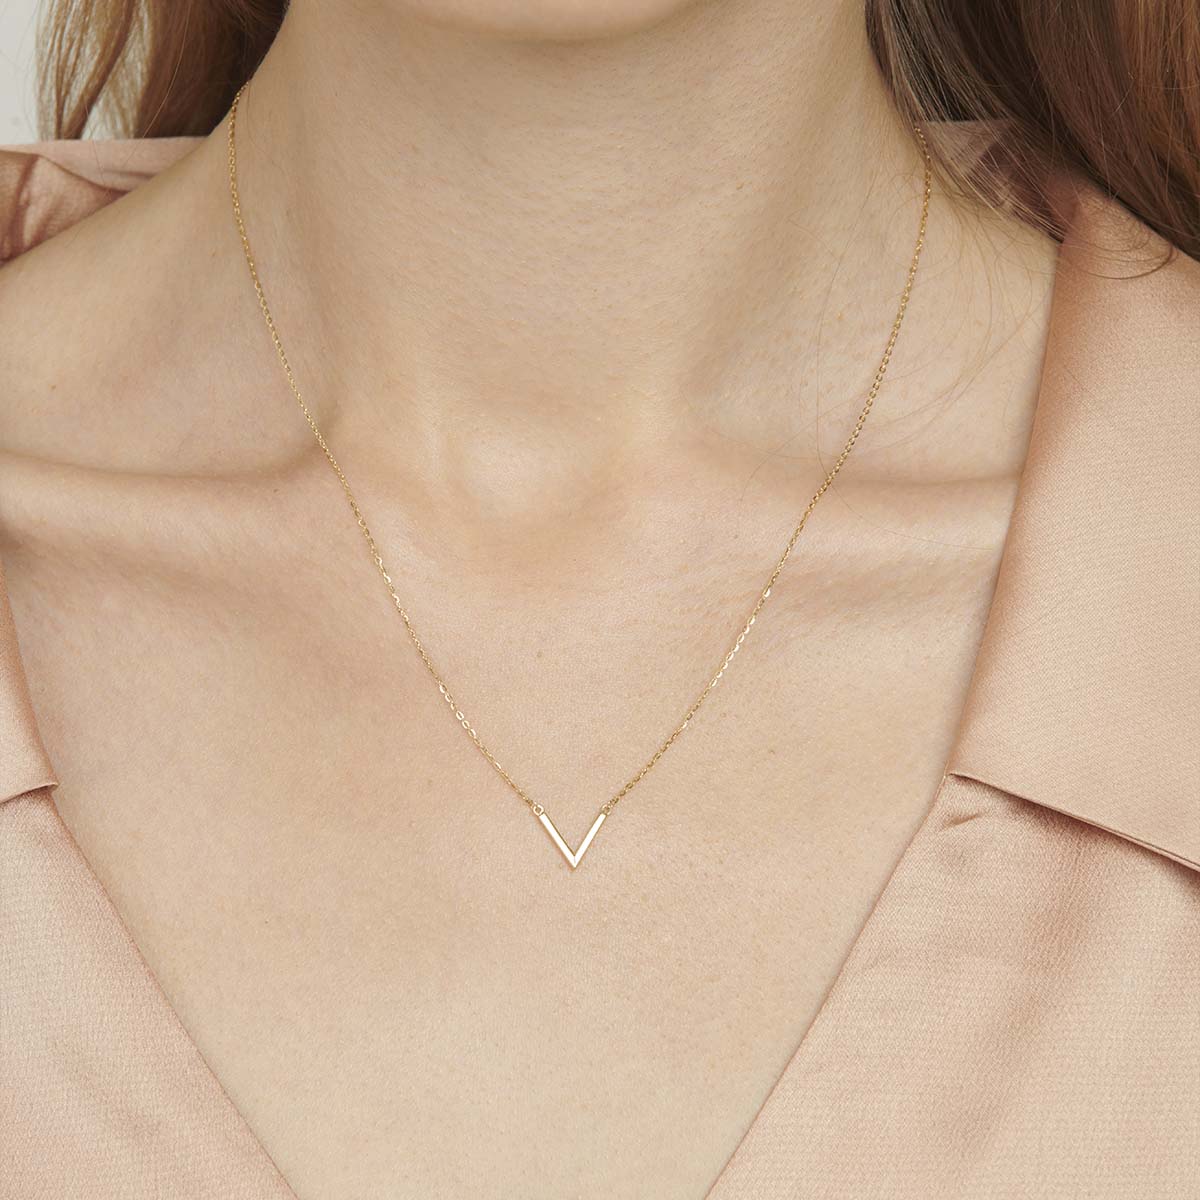 18k v shaped necklace for women